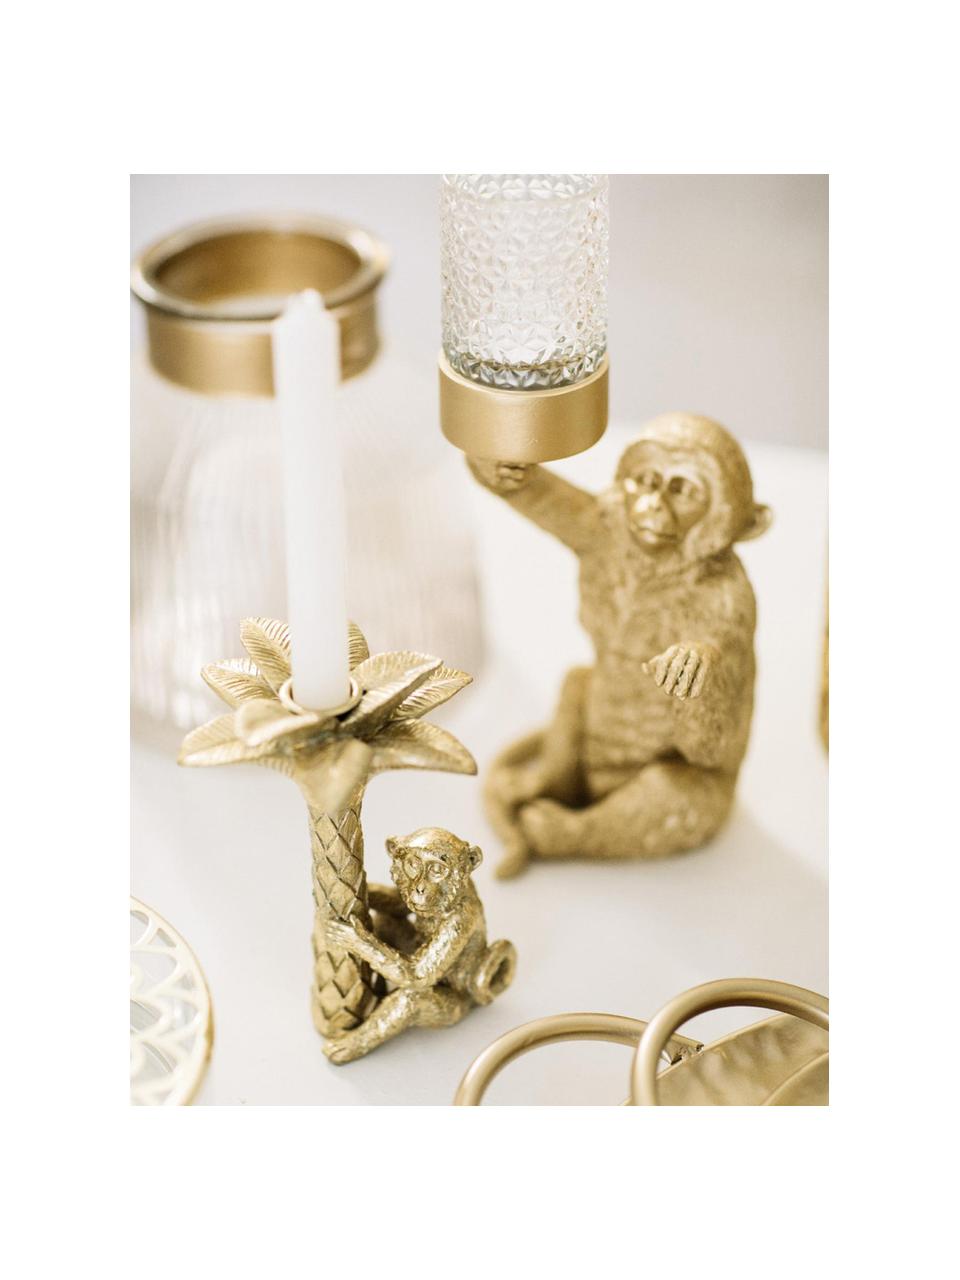 Świecznik na podgrzewacze Monkey, Tworzywo sztuczne, Odcienie złotego, S 16 x W 30 cm